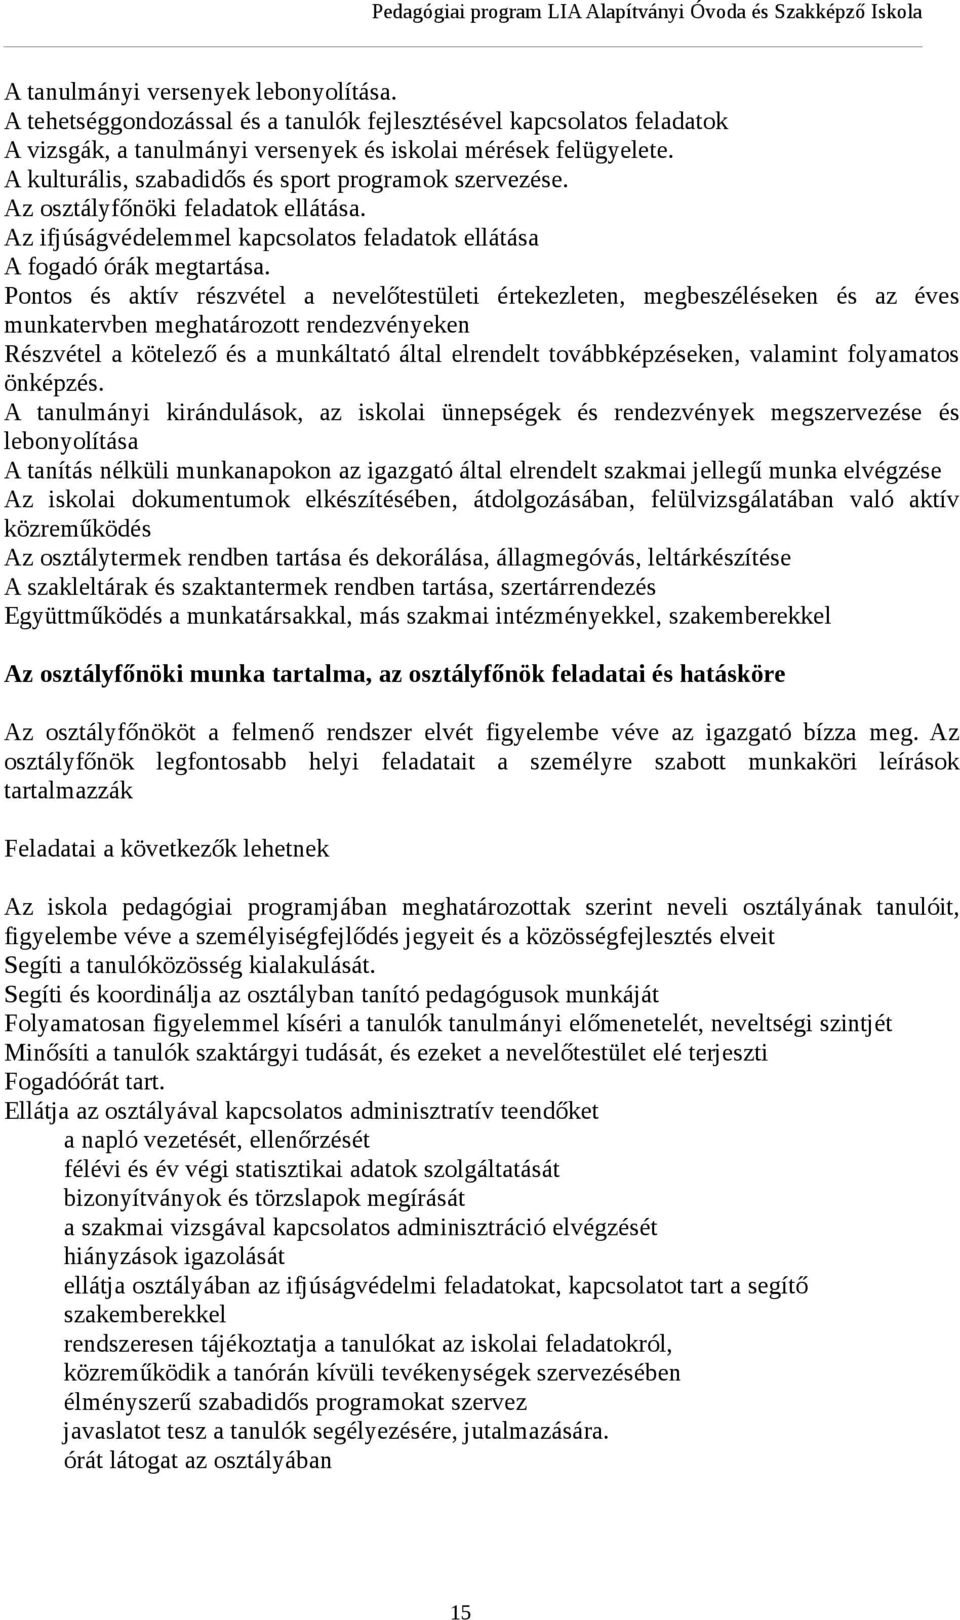 ##### Jó társkereső profil leírása példák - Tinder: szex- vagy társkereső? - motiver.hu